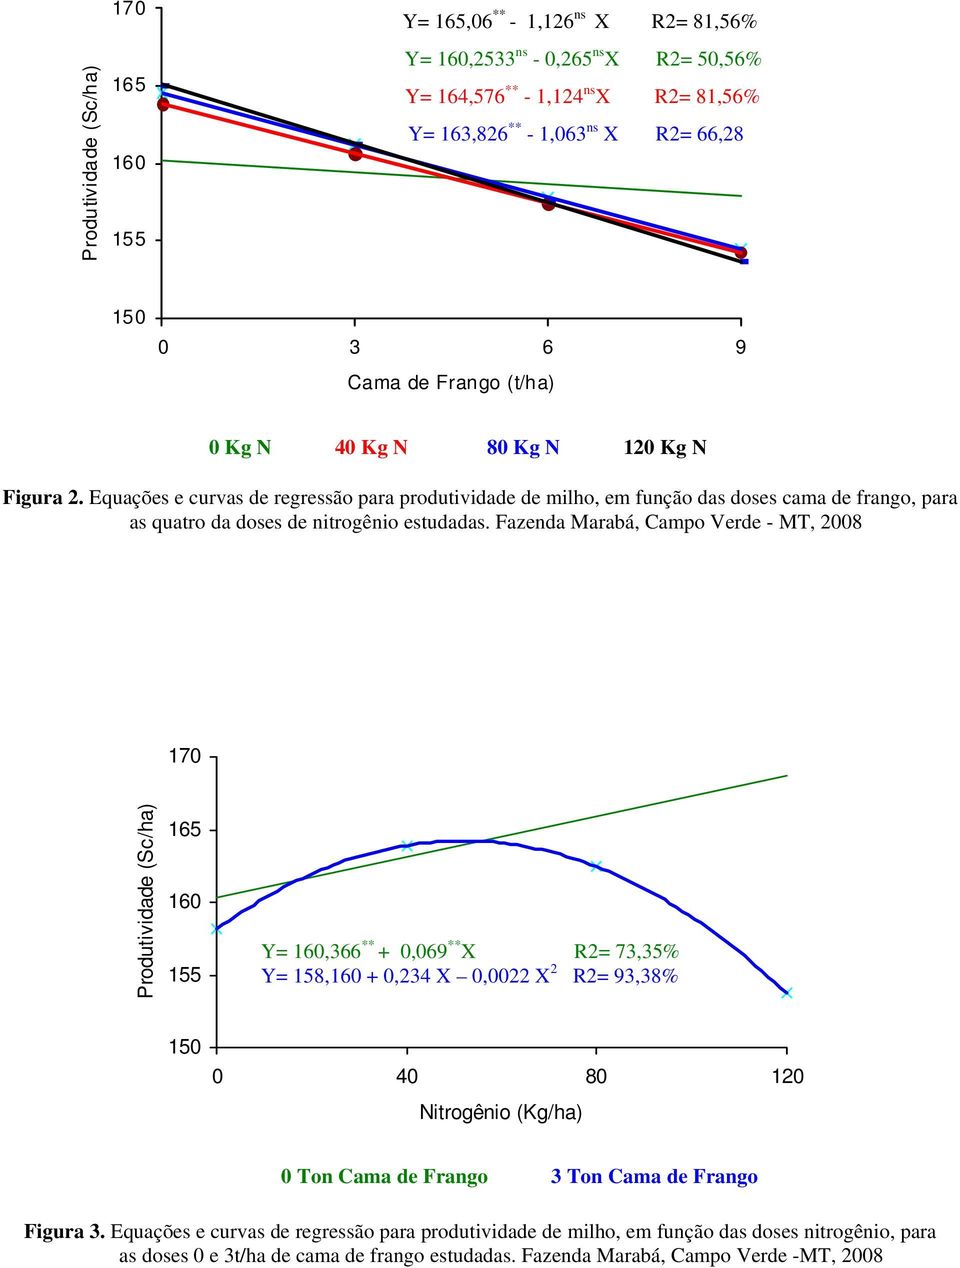 Equações e curvas de regressão para produtividade de milho, em função das doses cama de frango, para as quatro da doses de nitrogênio estudadas.